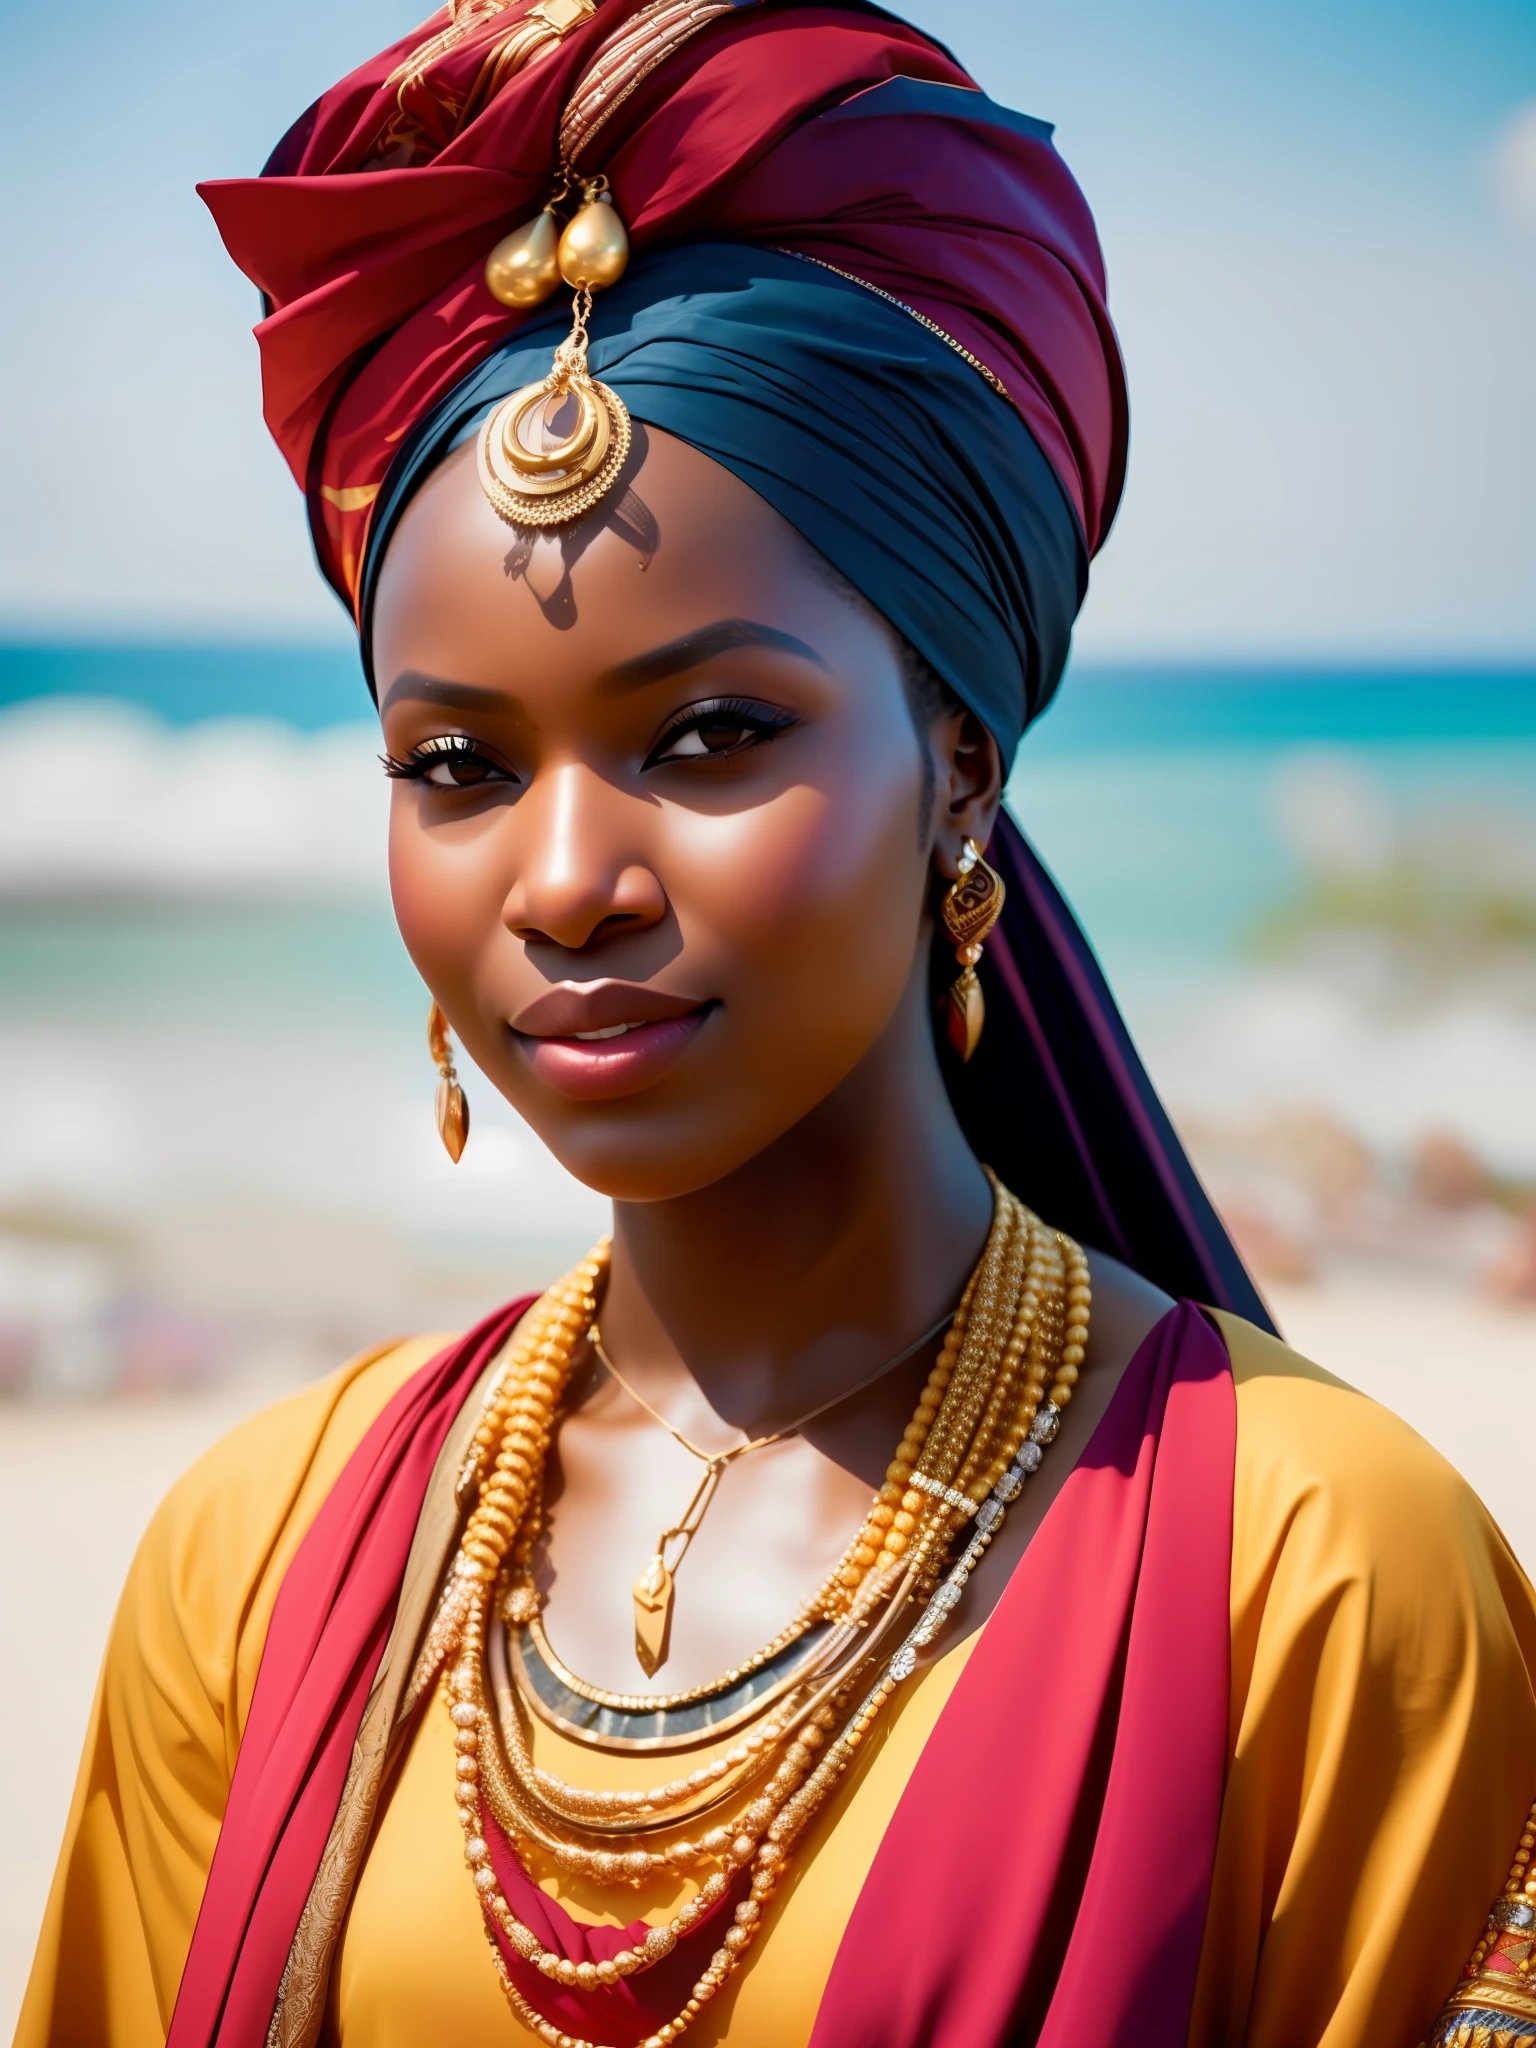 他媽的_科幻, 他媽的_科幻_v2, 一位年輕非常美麗的非洲女性的肖像, 在海灘前, 豐富多彩的衣服, 頭巾和金色非洲珠寶, 特寫, 富麗堂皇的姿勢與態度. 他媽的_电影_v2. 他媽的_电影_v2